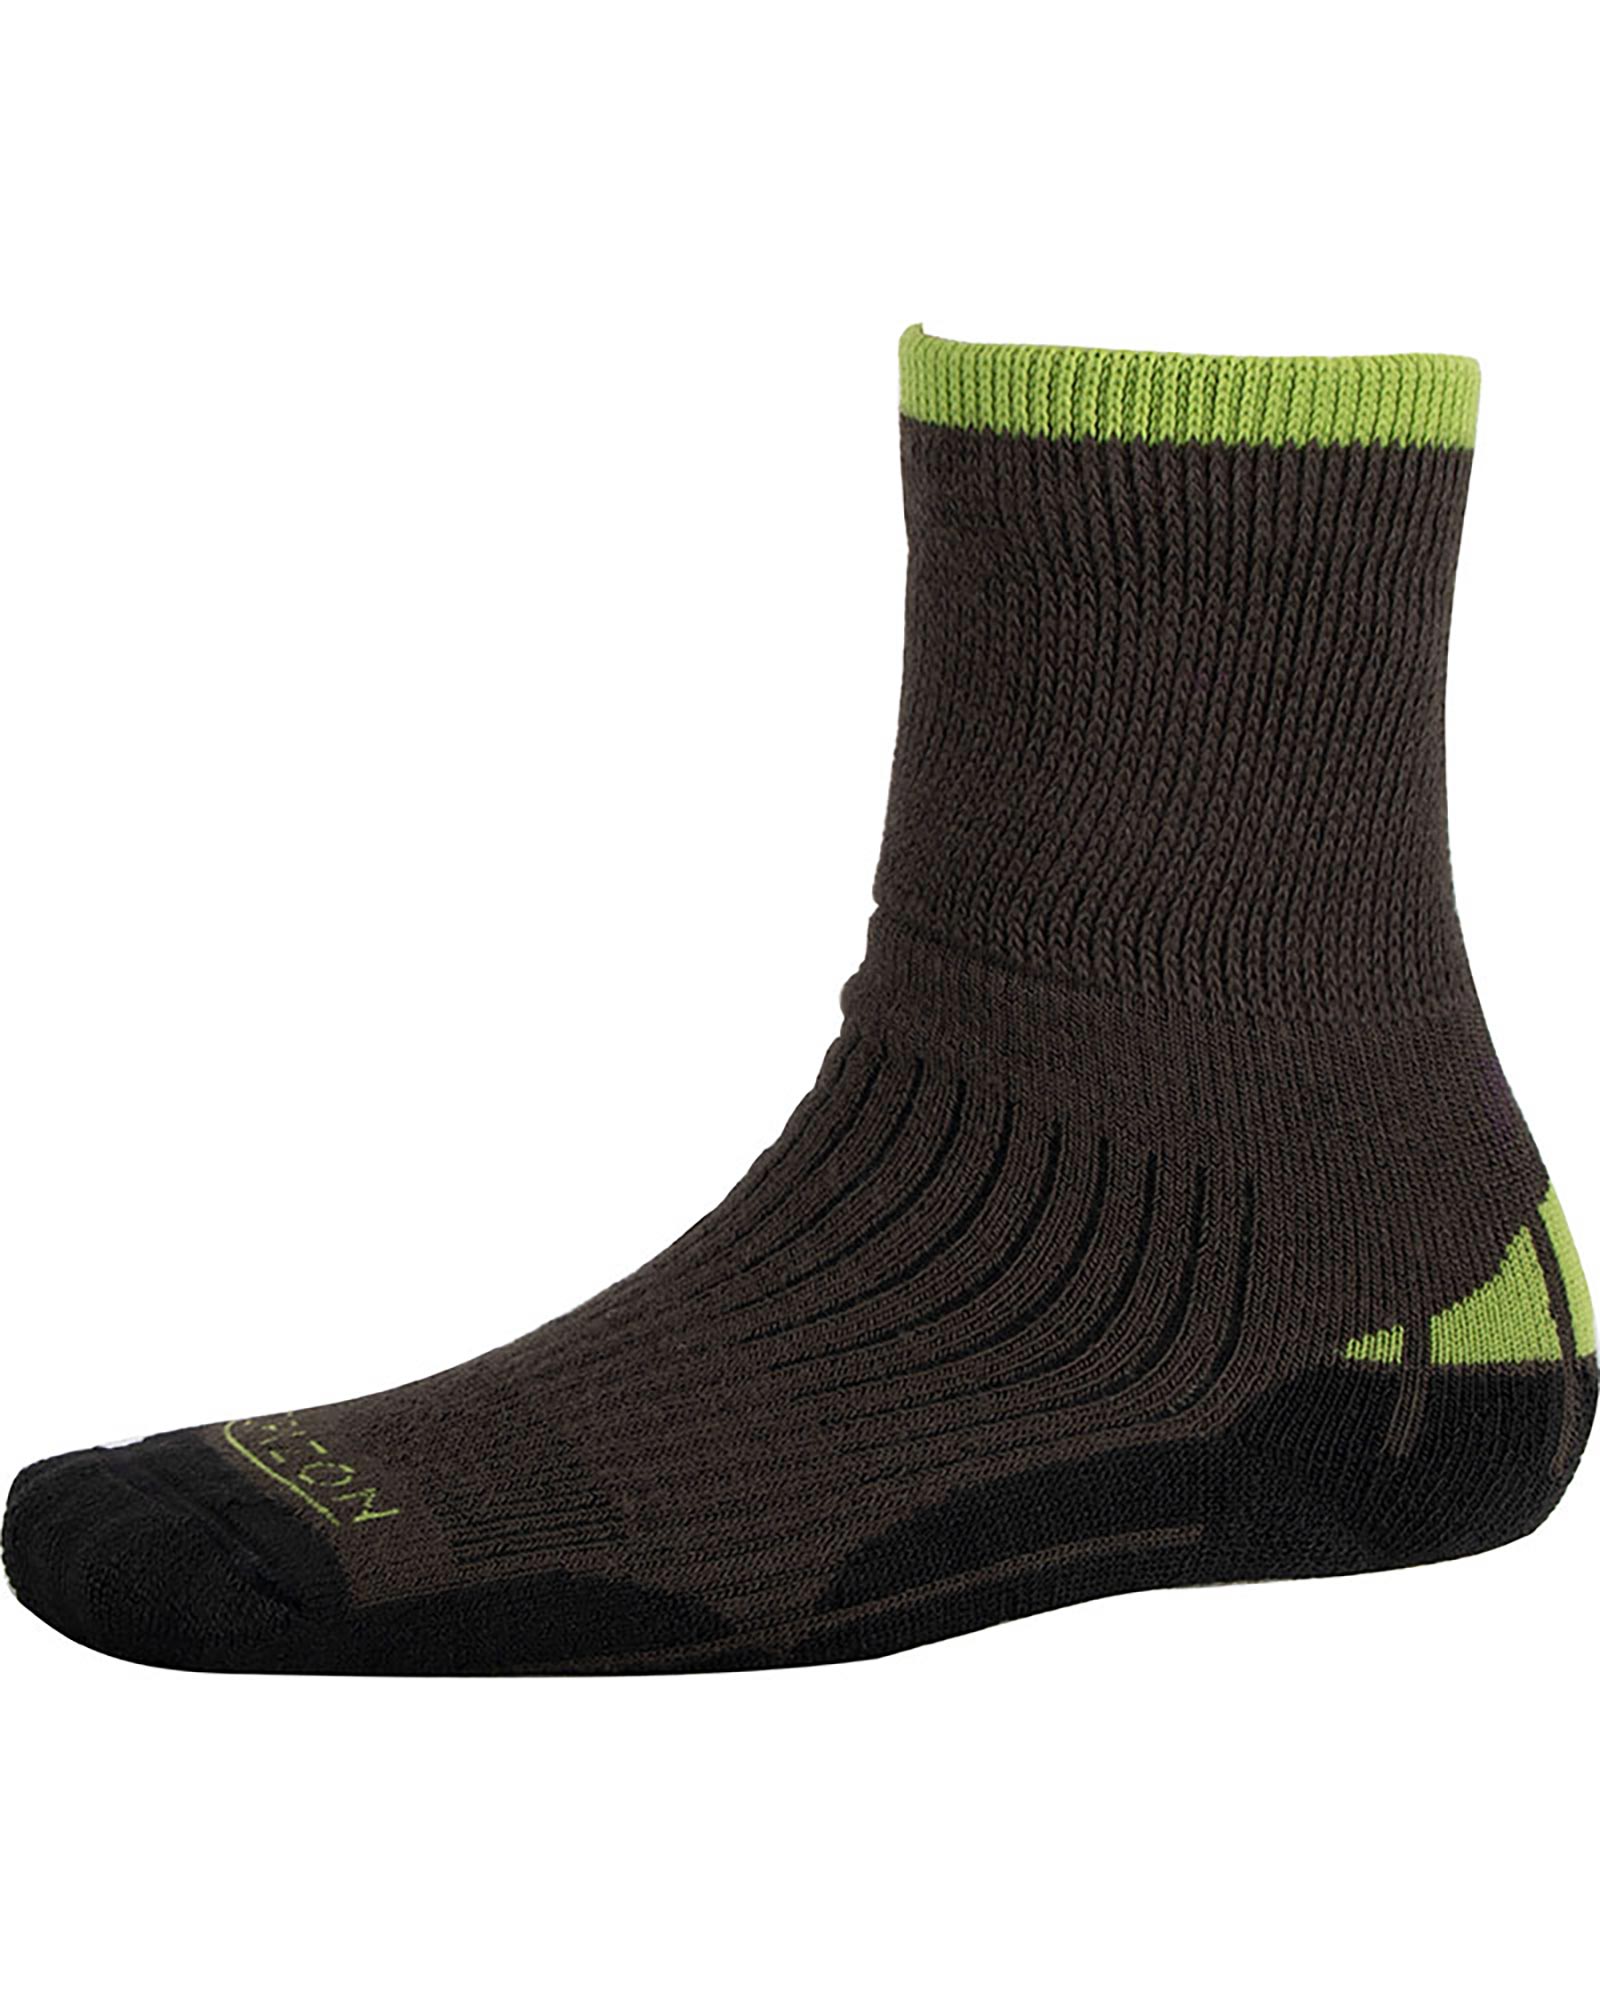 Ellis Brigham Hiker Coolmax Kids’ Socks - Charcoal/Green L